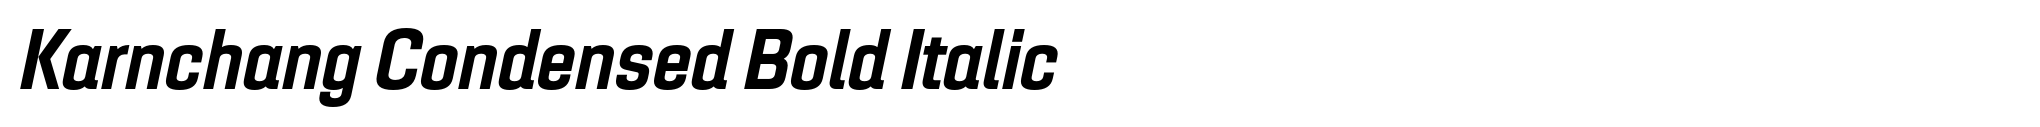 Karnchang Condensed Bold Italic image